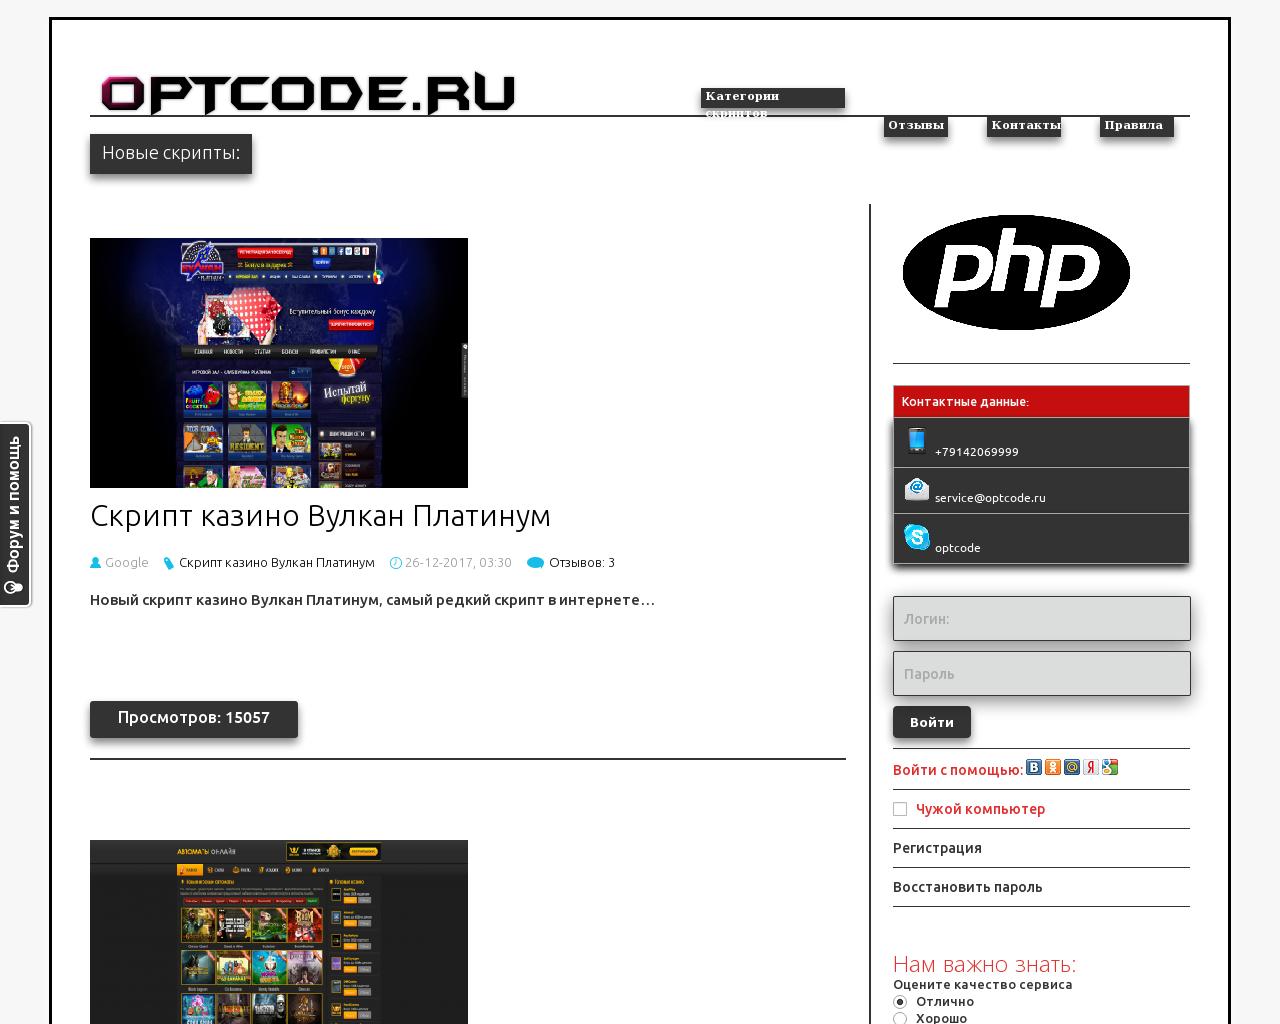 Изображение сайта optcode.ru в разрешении 1280x1024